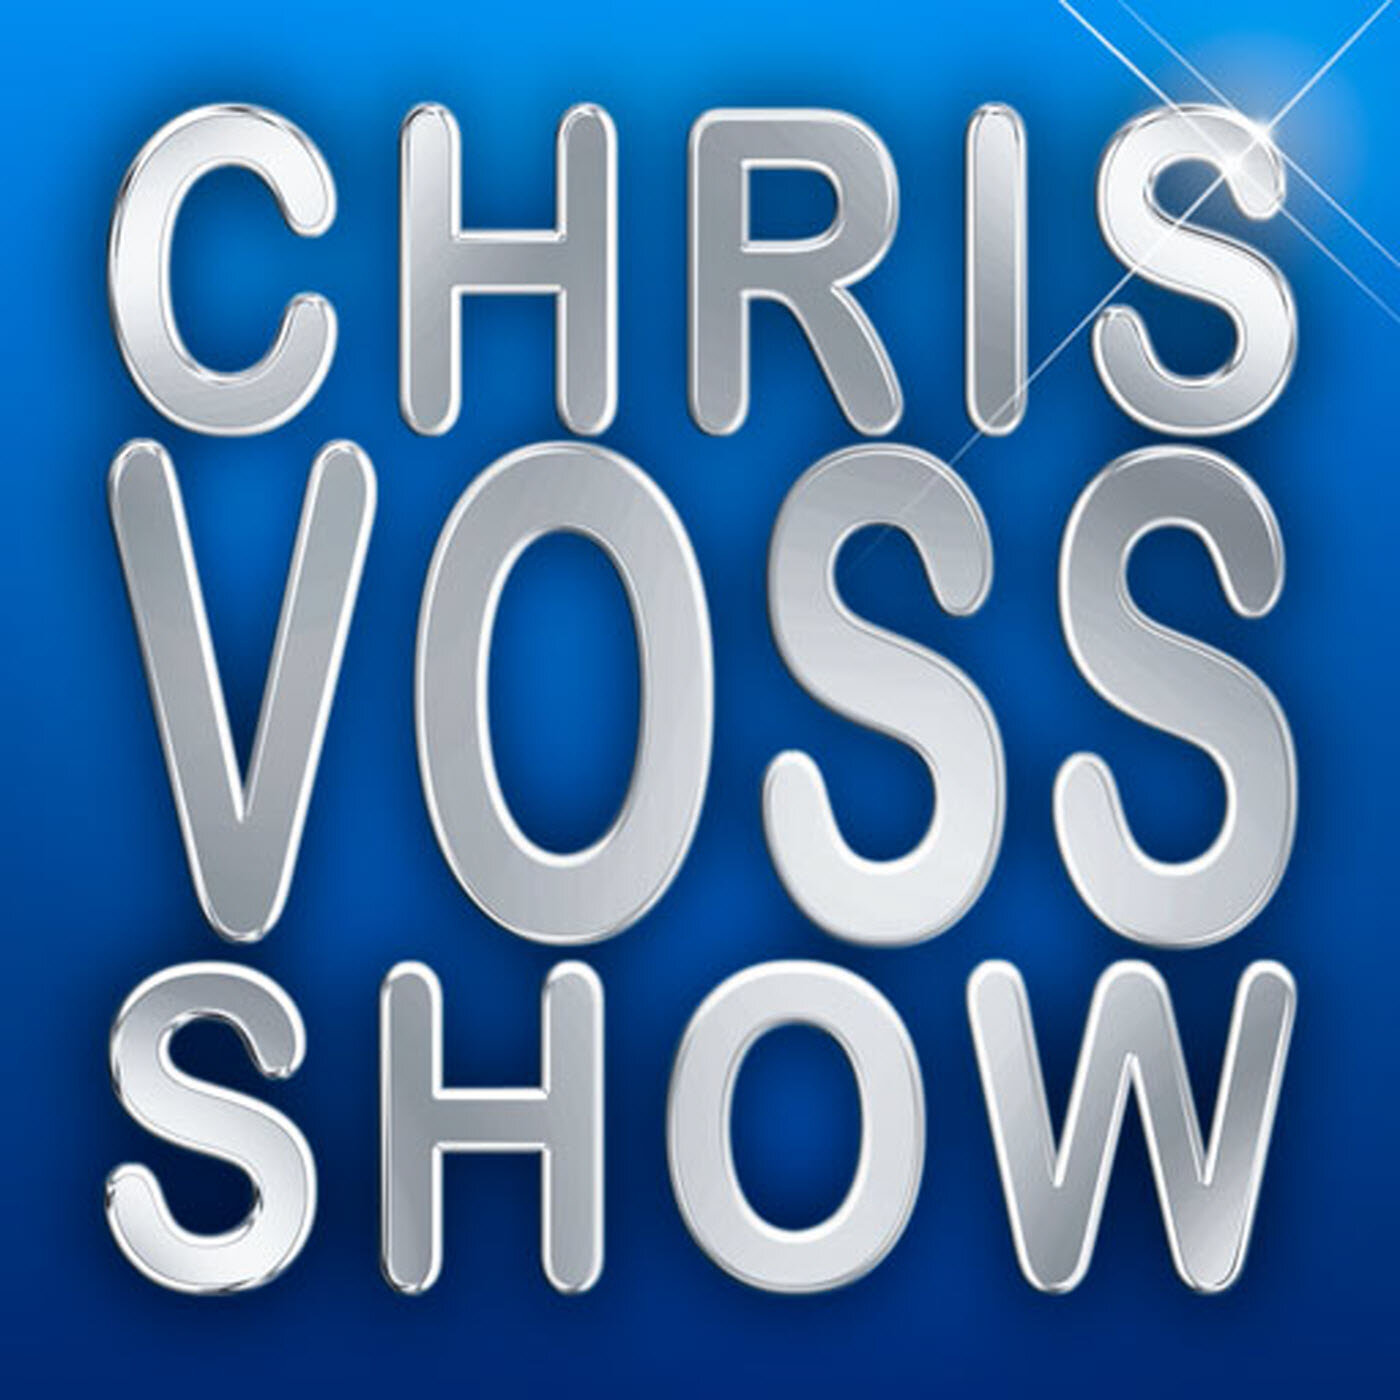 Chris Voss Show Interview